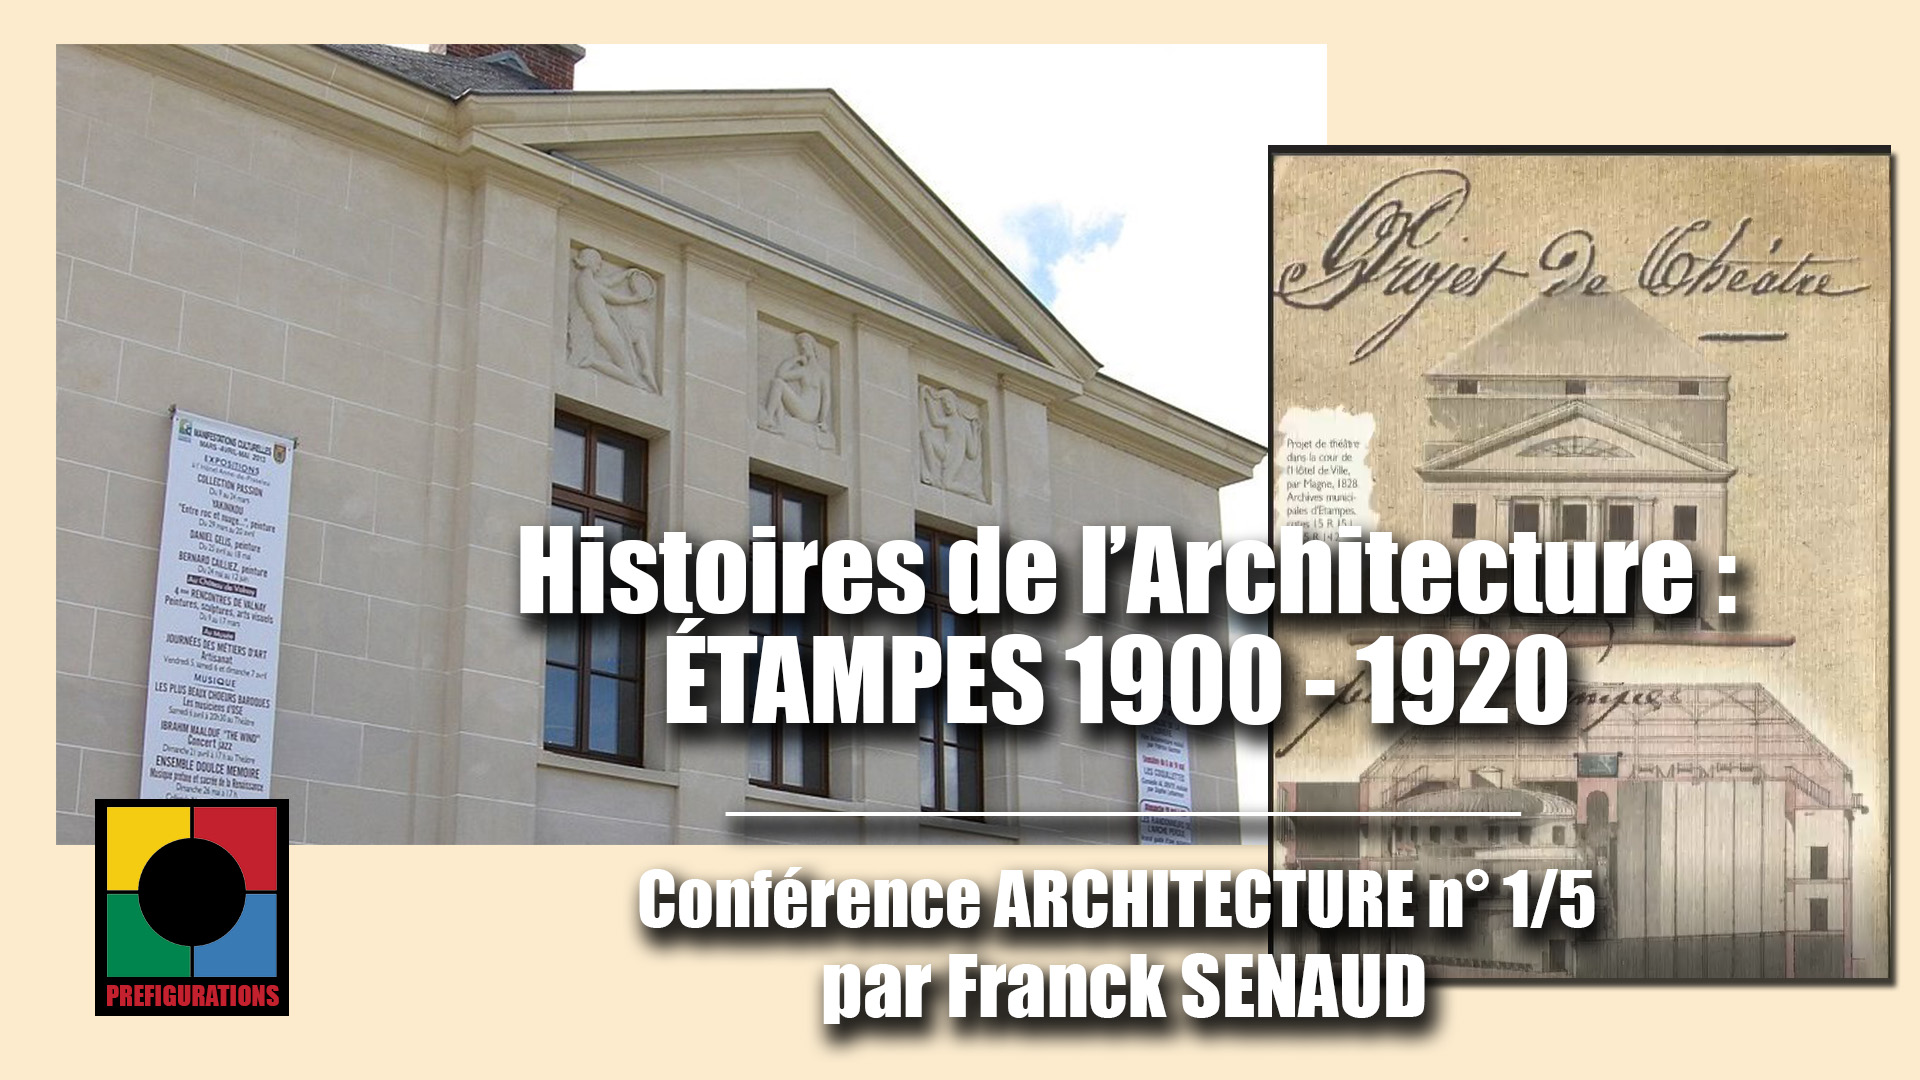 CONF-ARCHI-Etampes 1900-1920